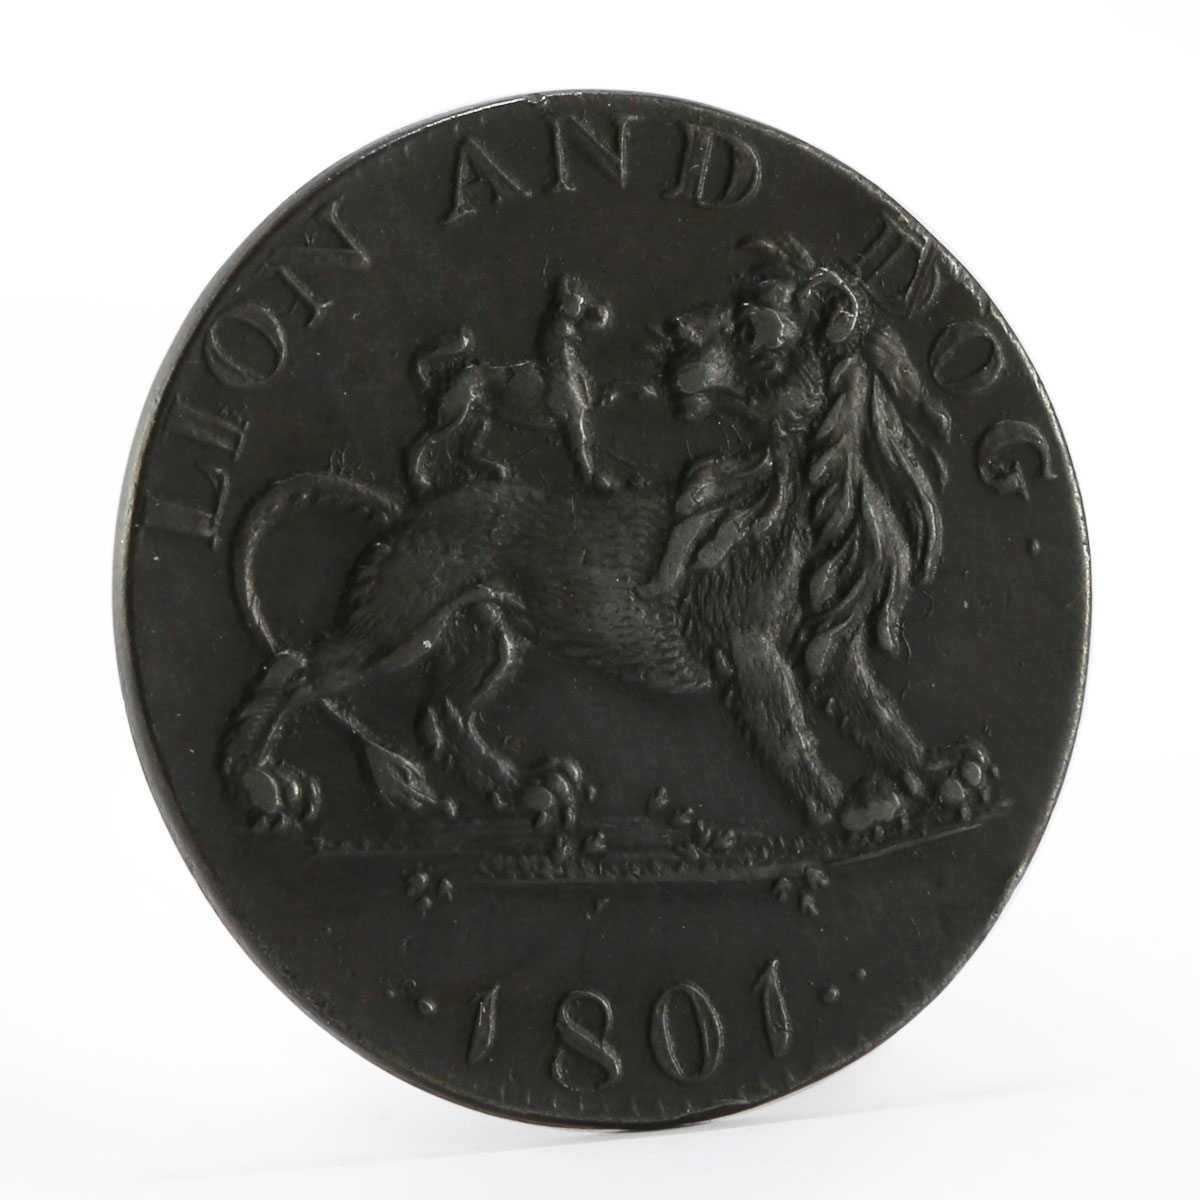 England Pidcock’s Menagerie Animals Kangaroo with Joey Lion and Dog token 1801